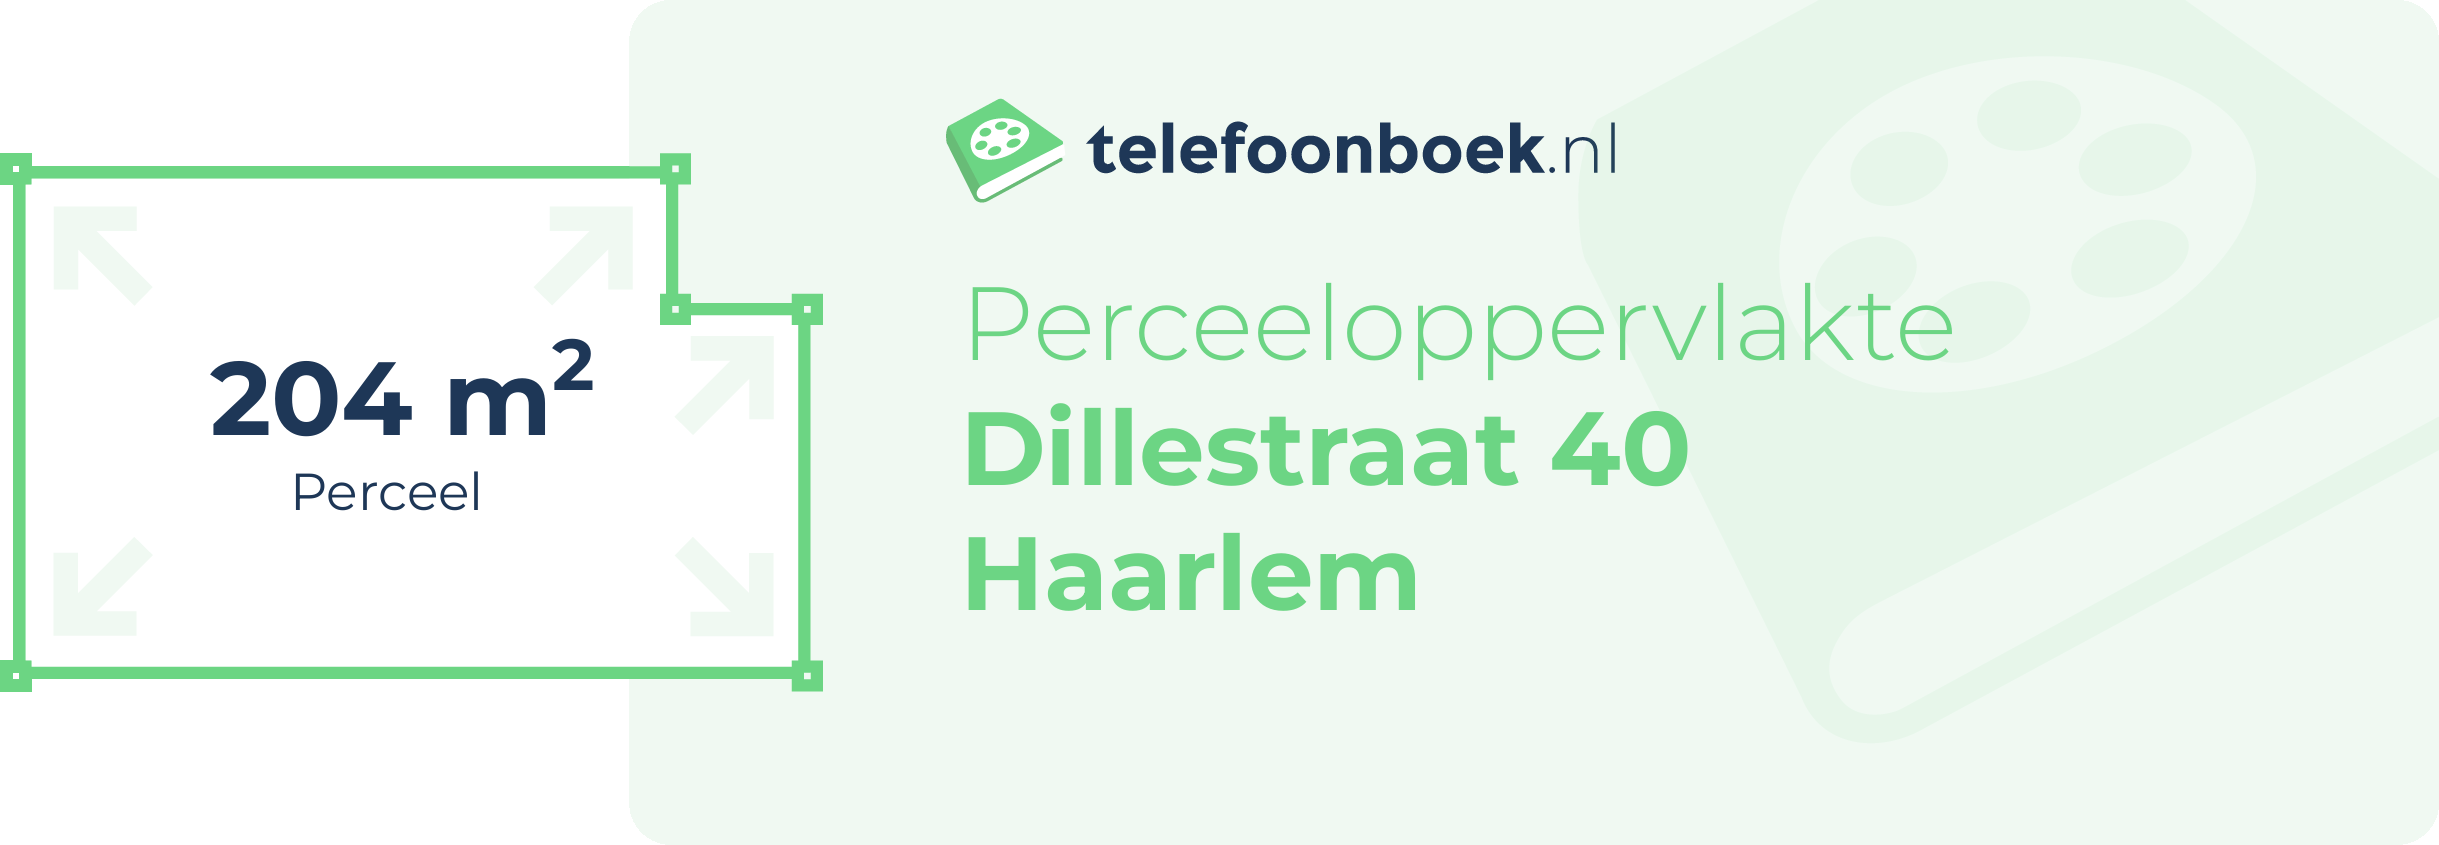 Perceeloppervlakte Dillestraat 40 Haarlem